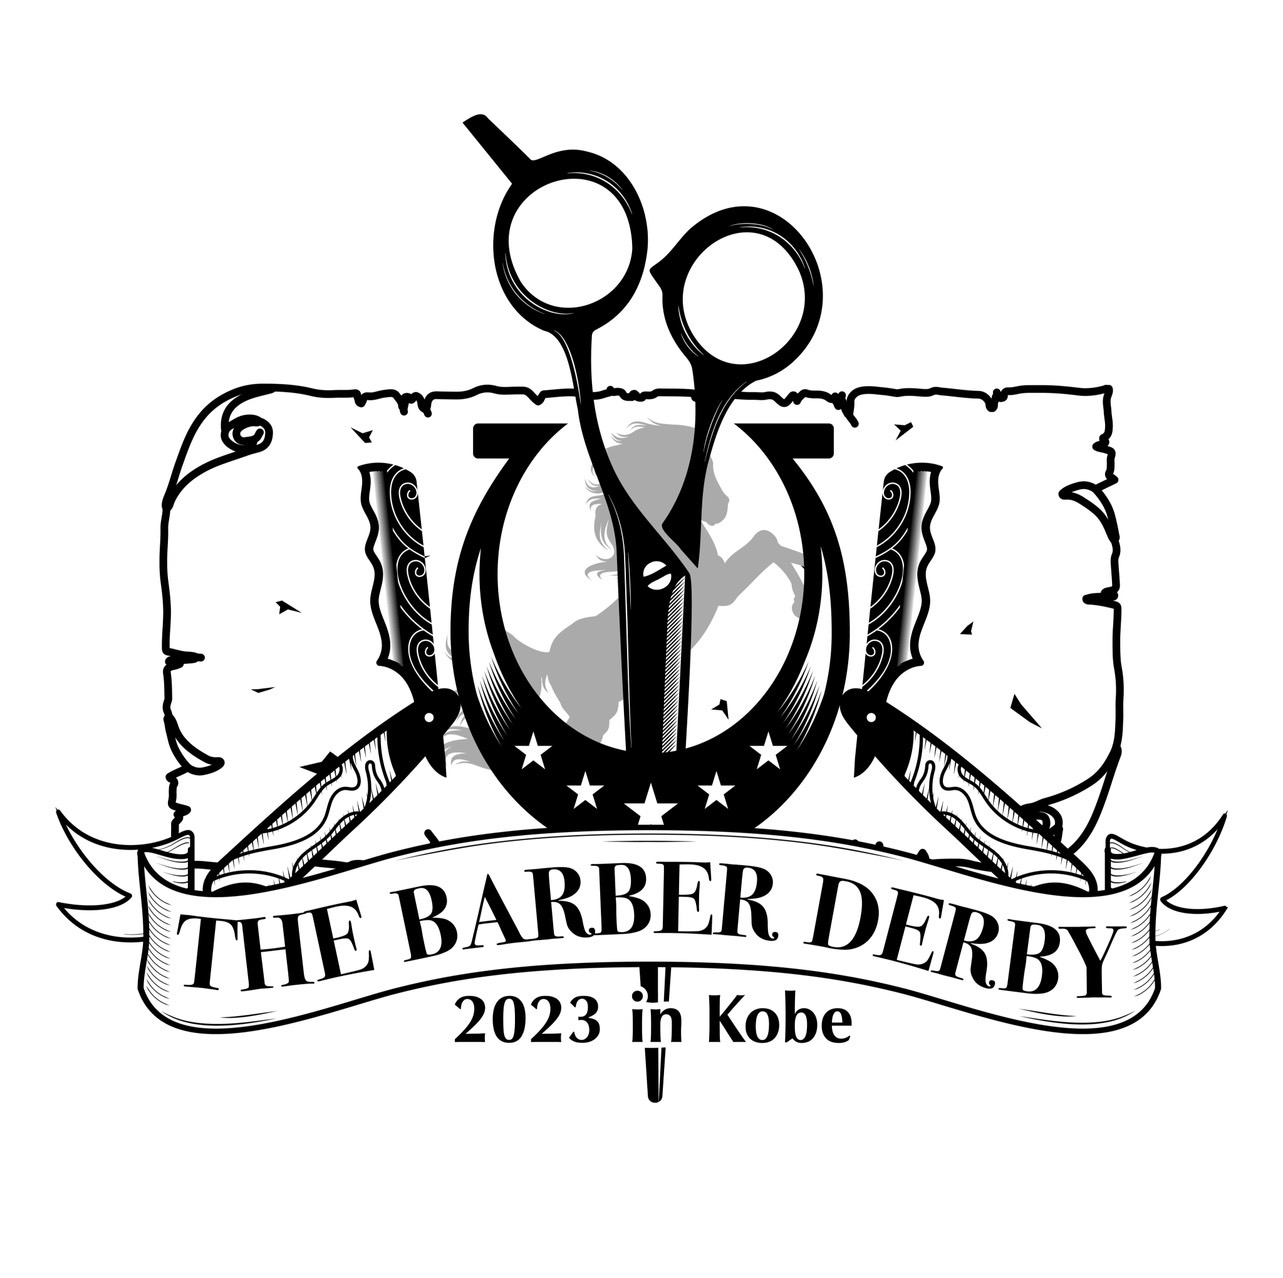 THE BARBER DERBY 2023 in KOBE